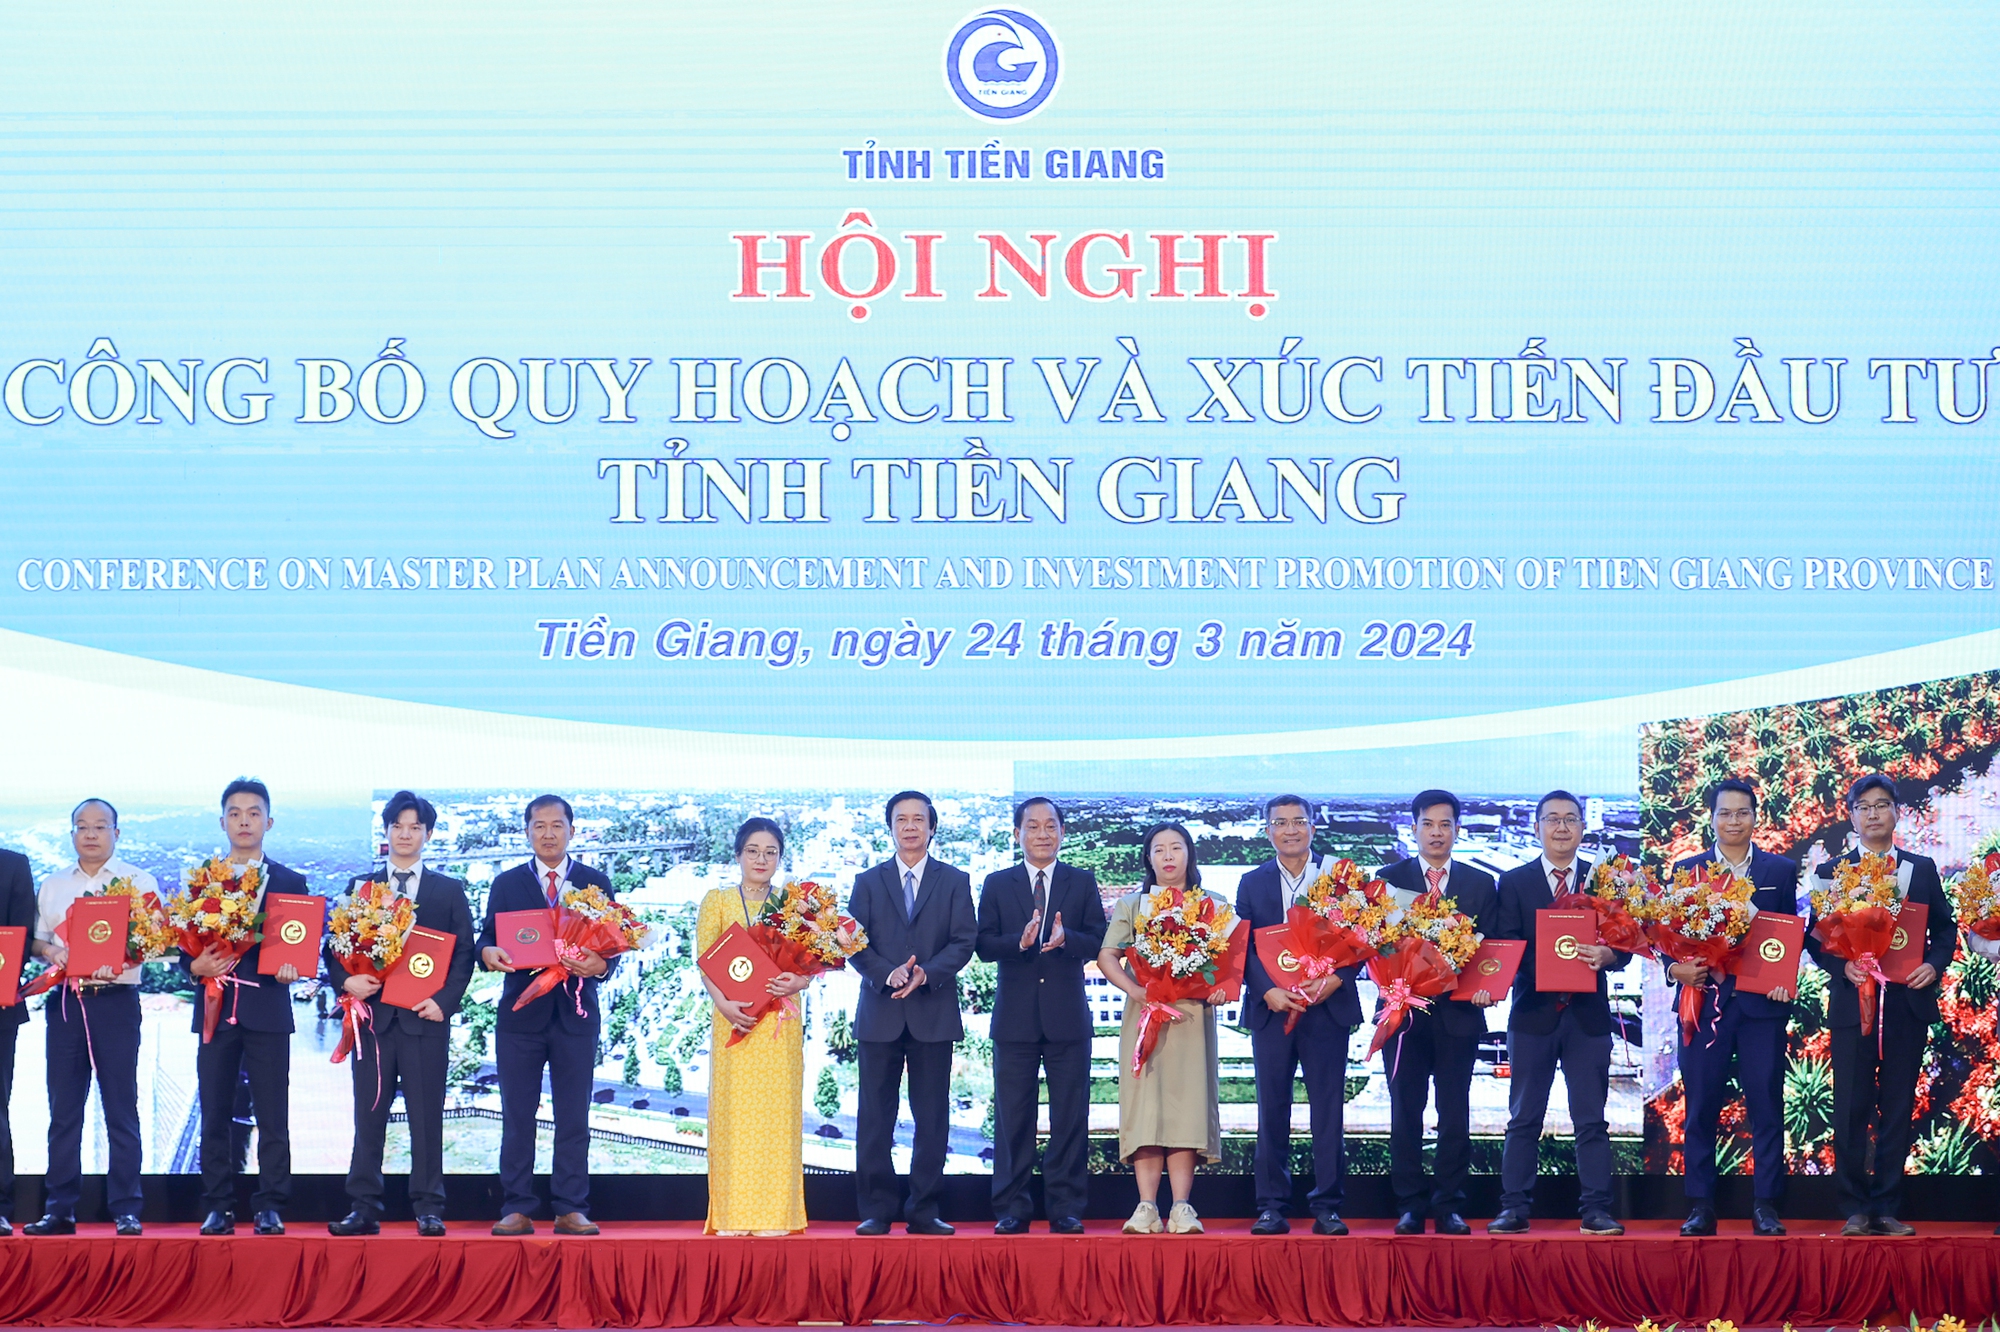 Lãnh đạo tỉnh Tiền Giang Trao giấy chứng nhận đầu tư cho 14 dự án - Ảnh: VGP/Nhật Bắc